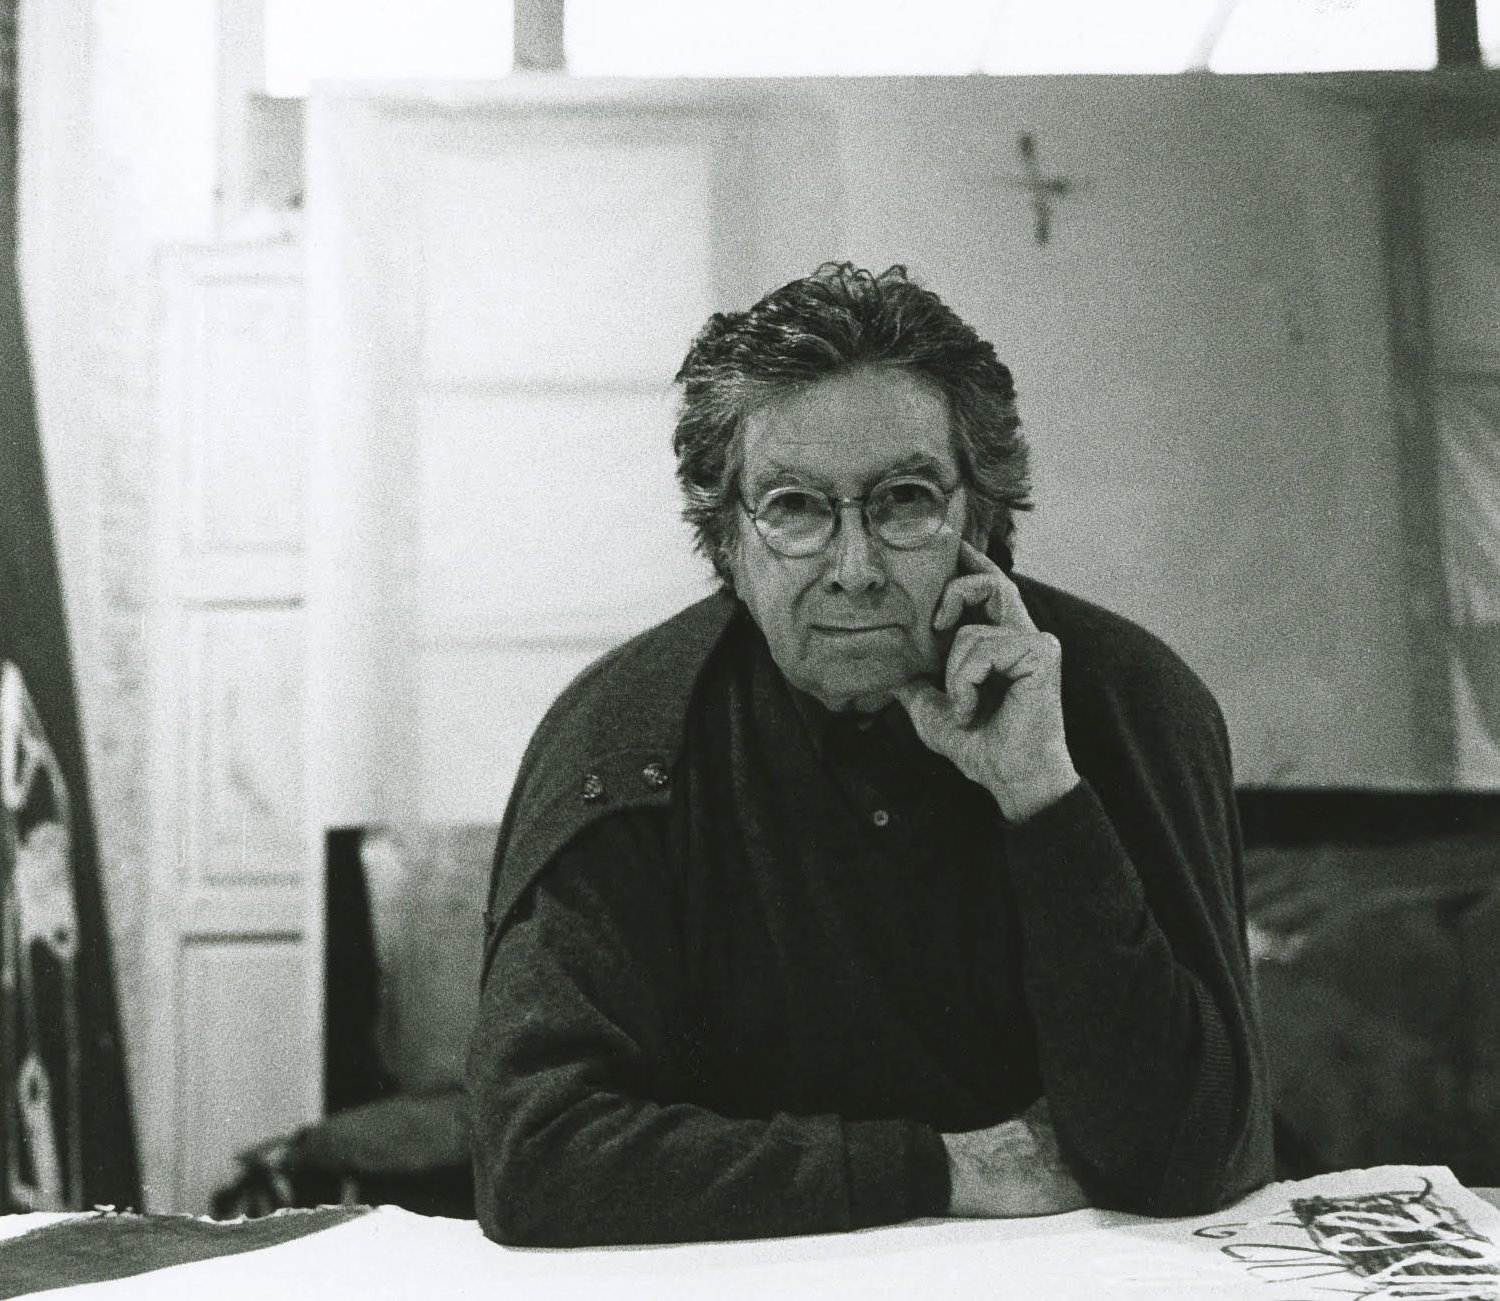 L'obra d'Antoni Tàpies s'exilia a Brussel·les